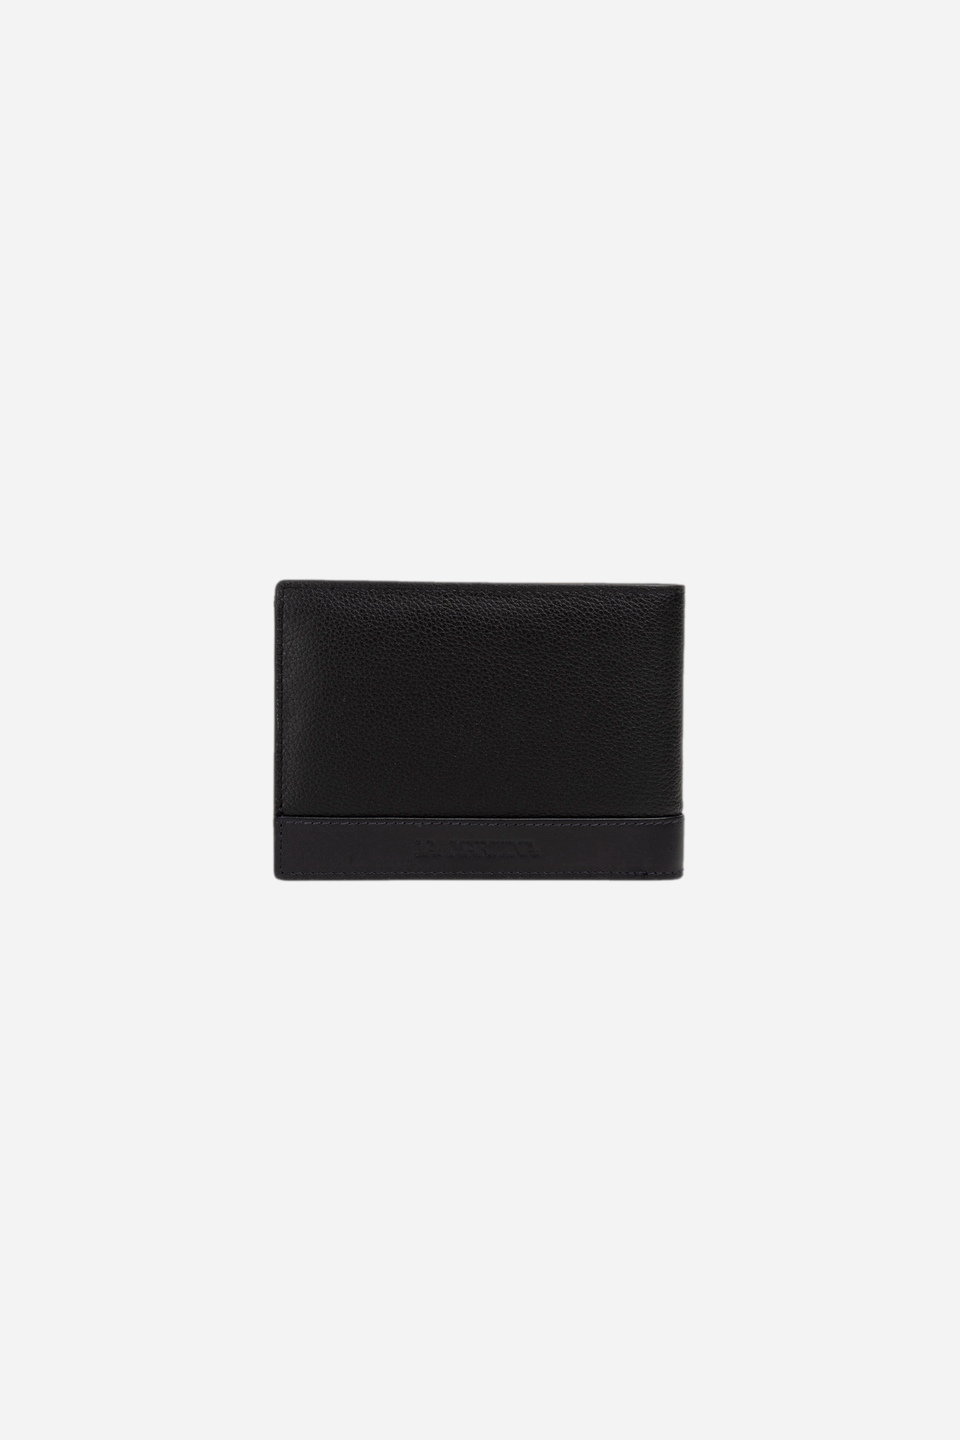 Men's leather wallet | La Martina - Official Online Shop